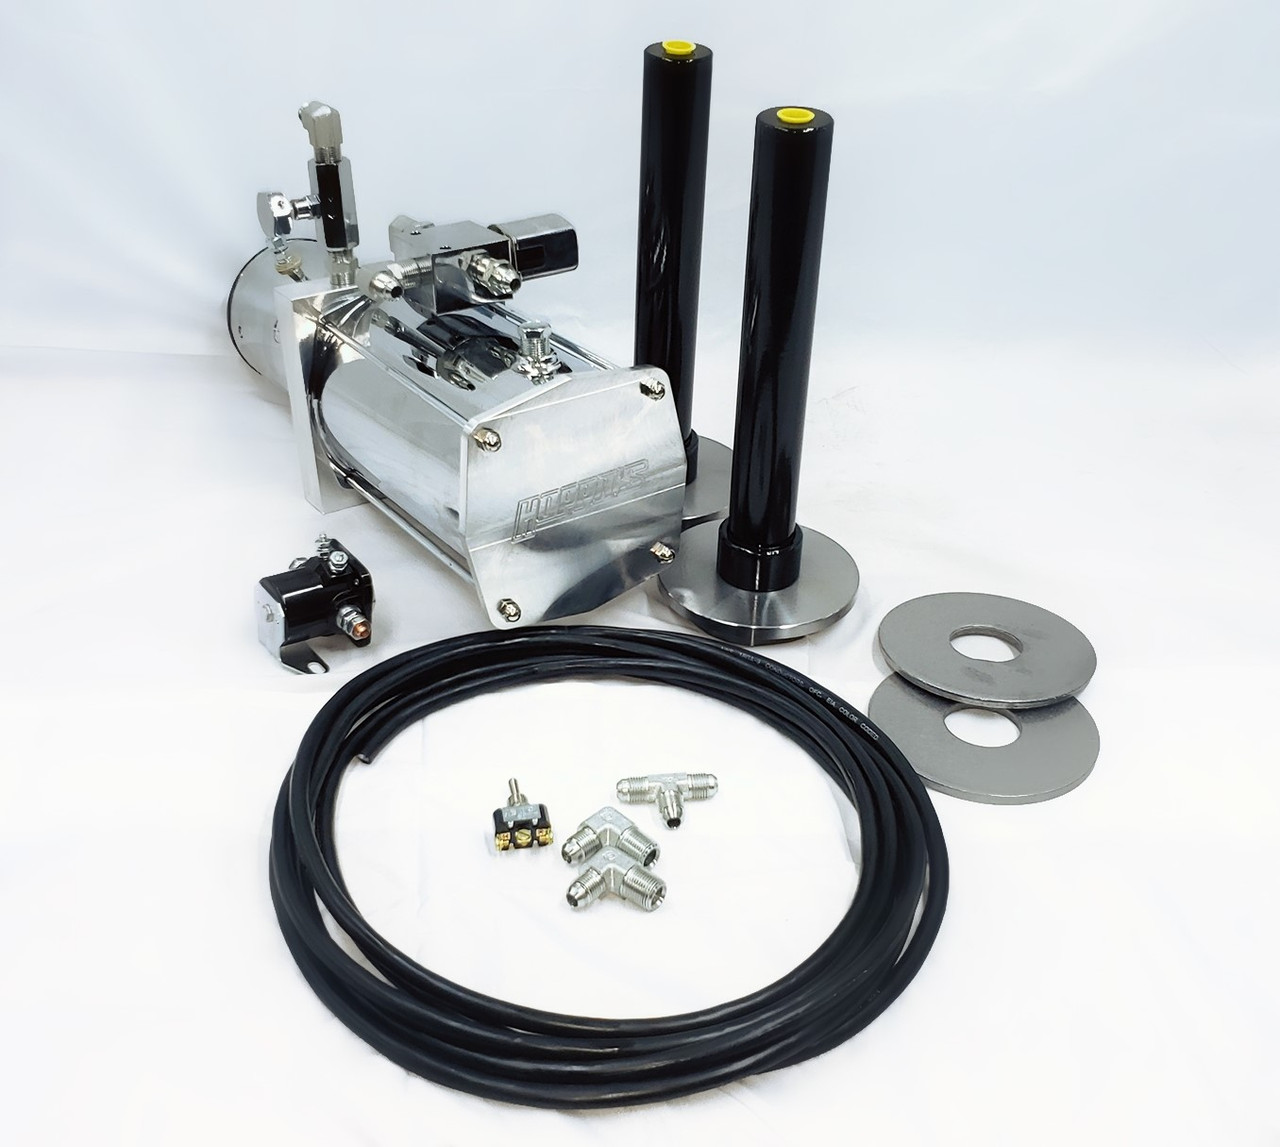 H01 hydraulic gas spring exchange kit - Eightpins Shop